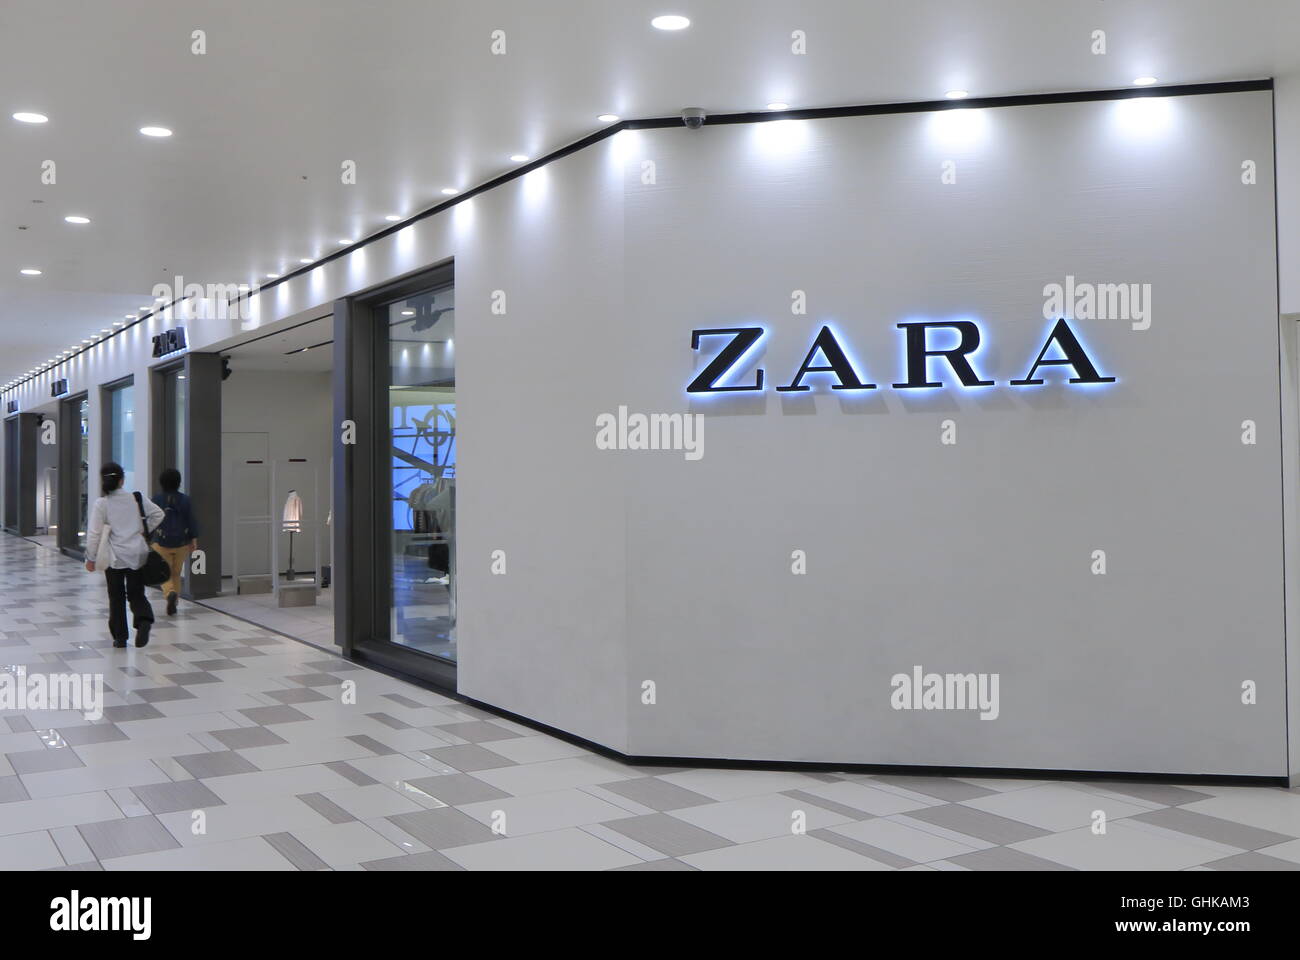 ZARA Shop spanische Kleidung und Accessoires Händler mit Sitz in Galicien  Spanien 1975 gegründet Stockfotografie - Alamy